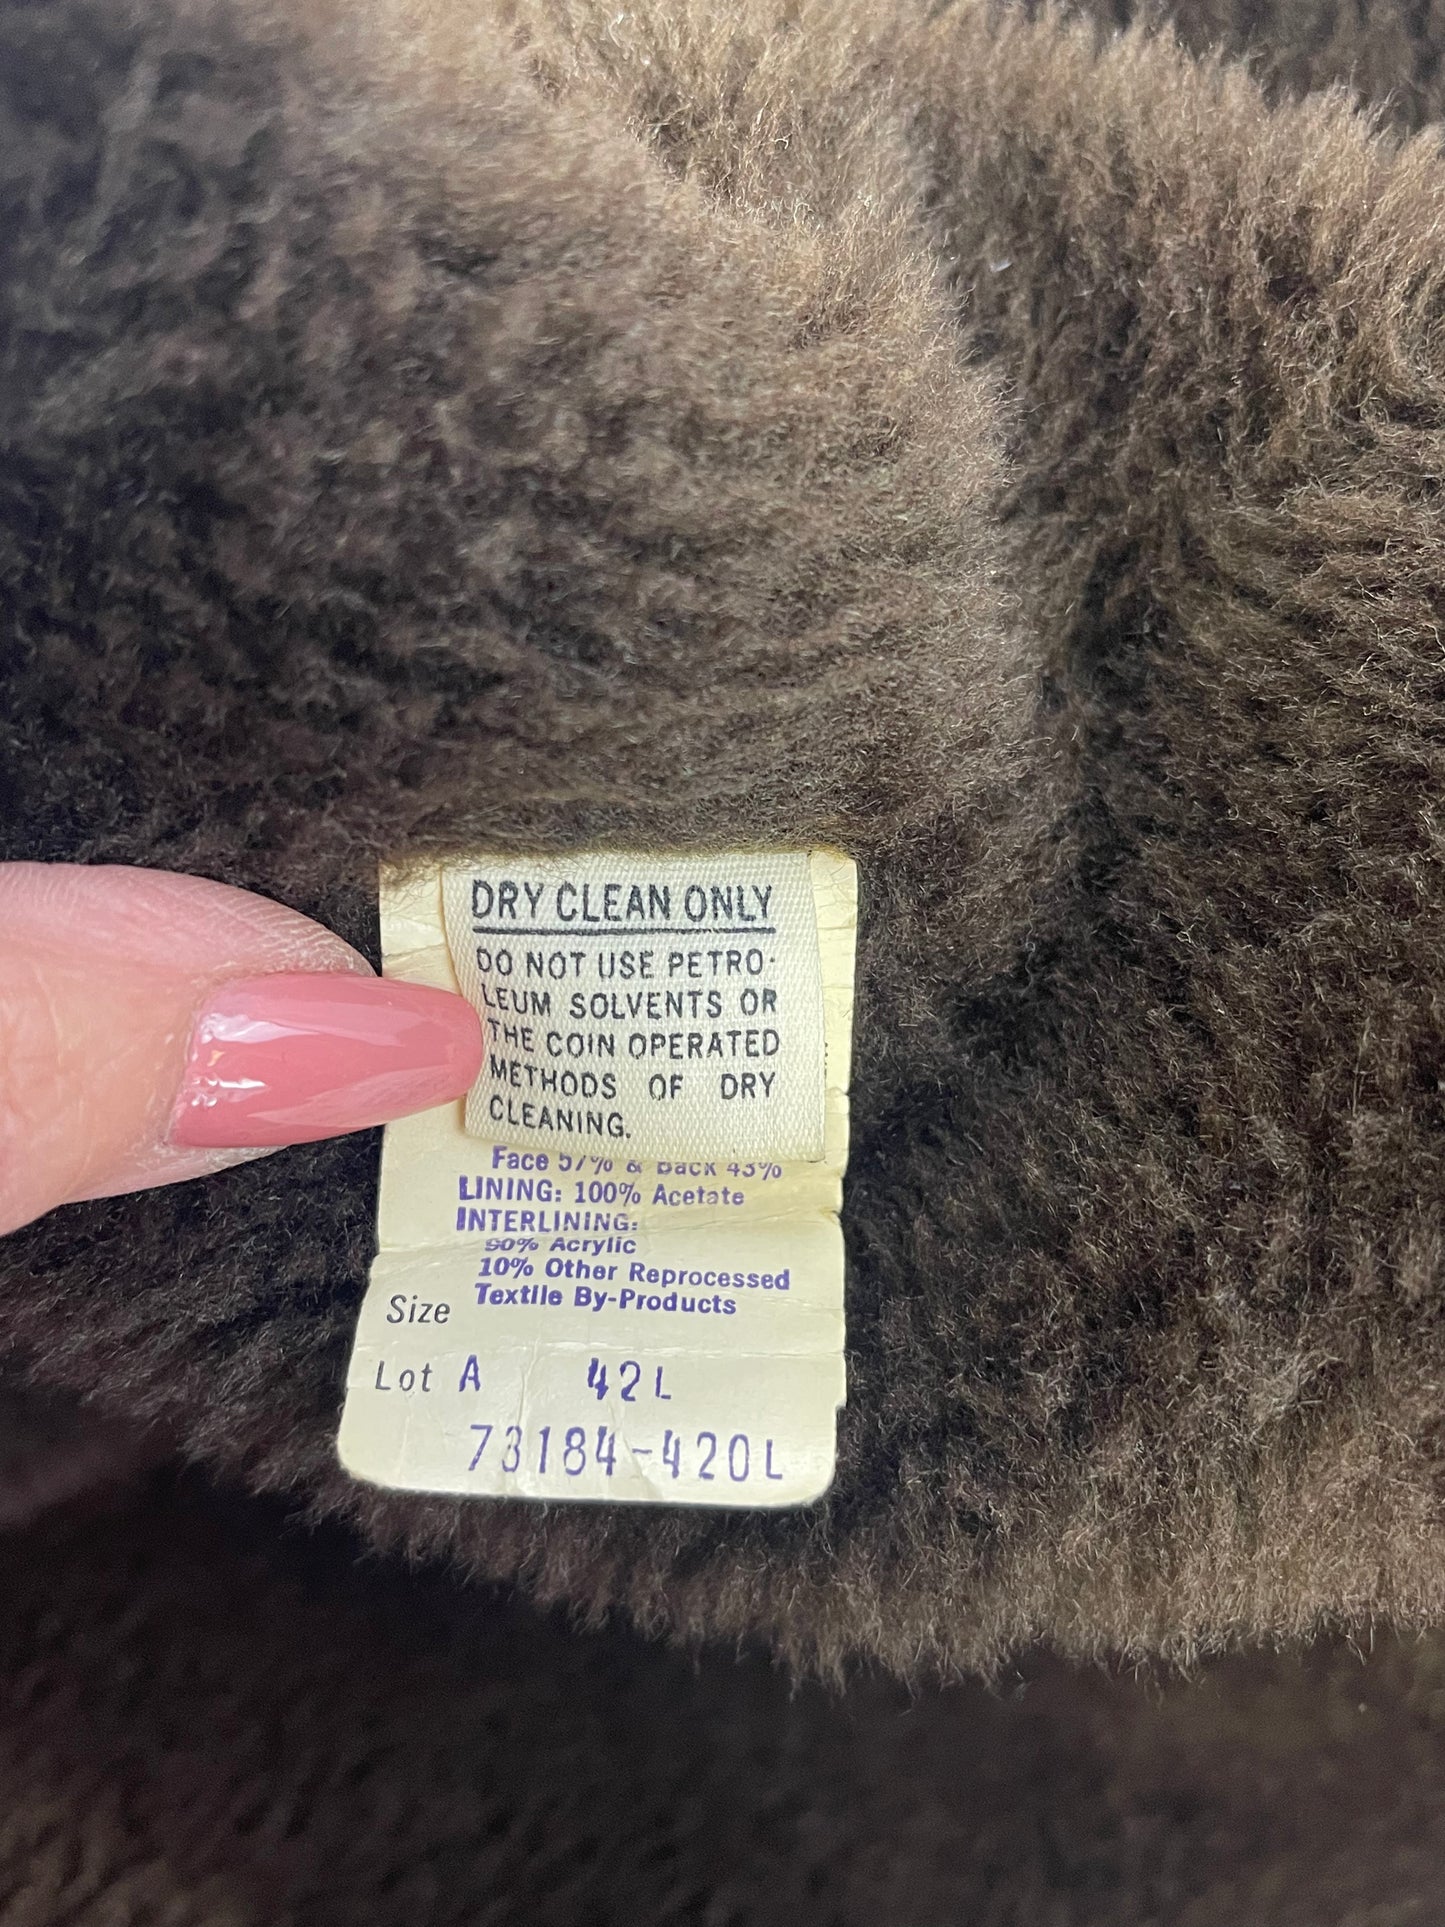 Sears Wool Overcoat 42 Long